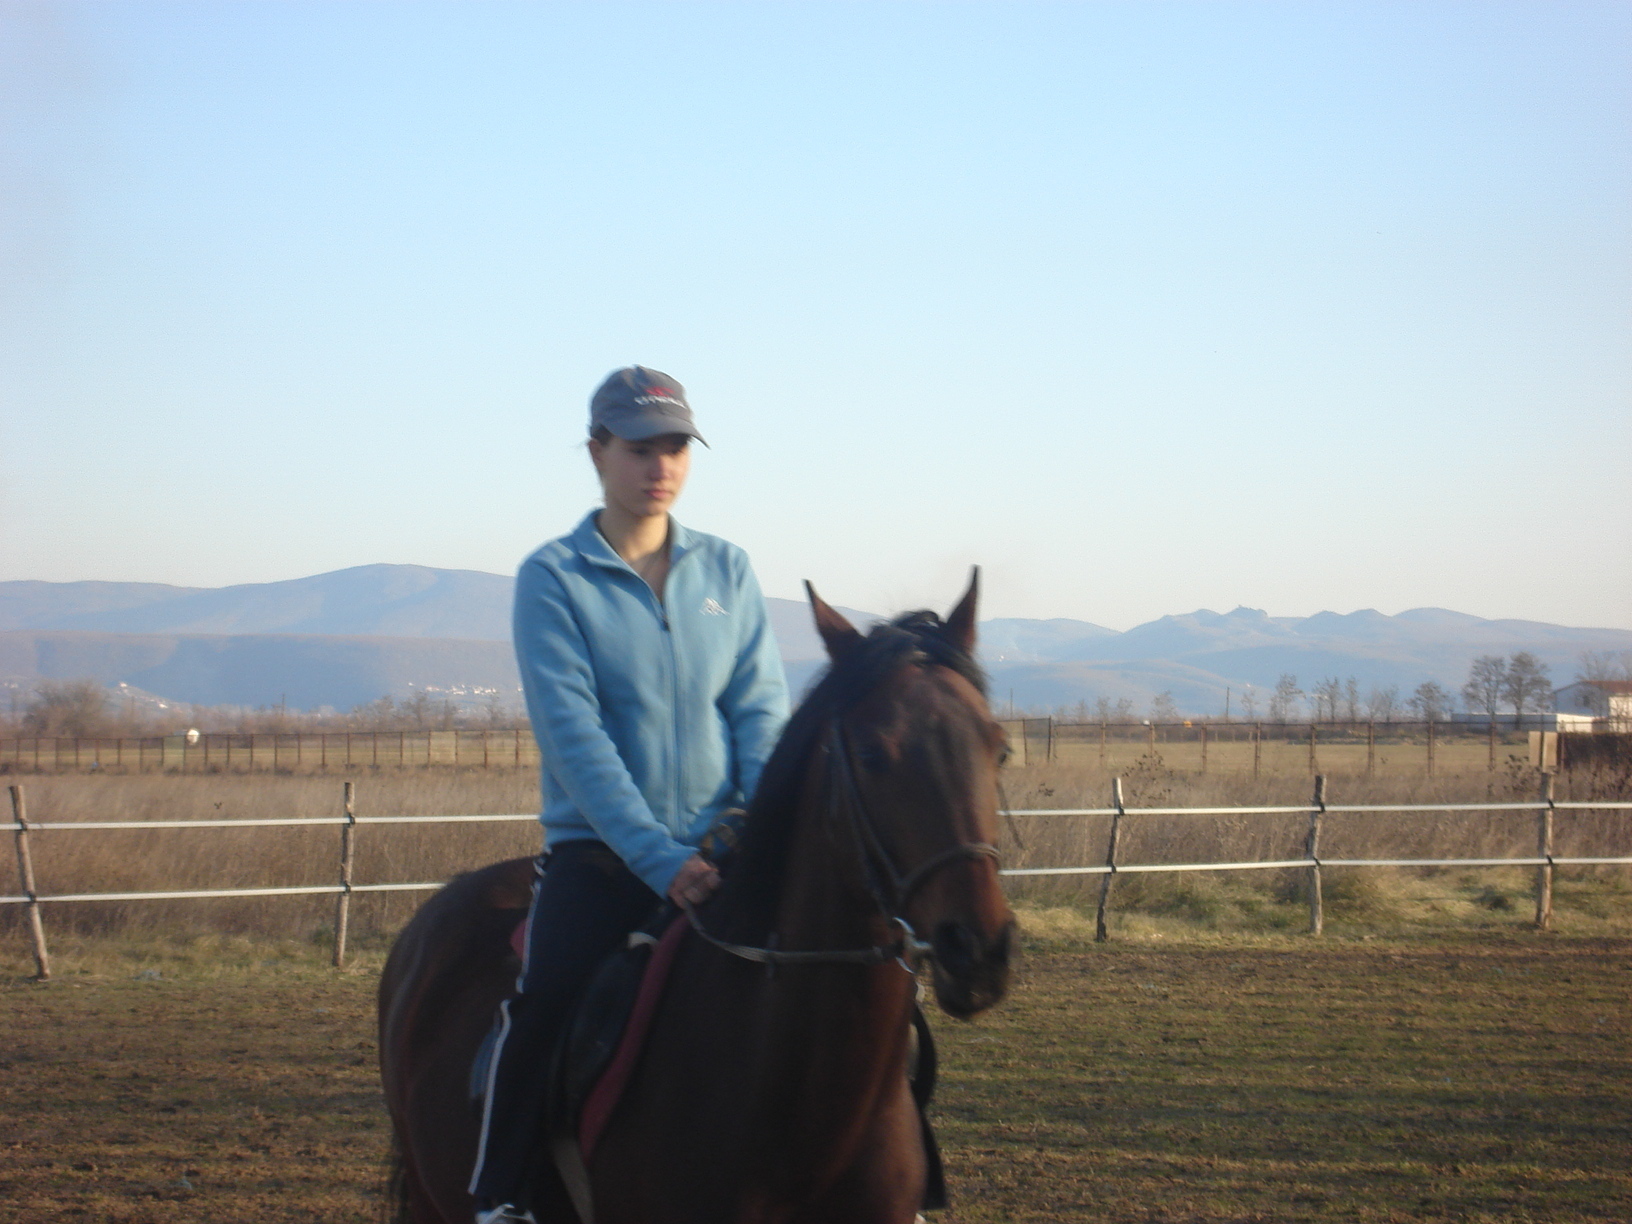 Me riding a horse